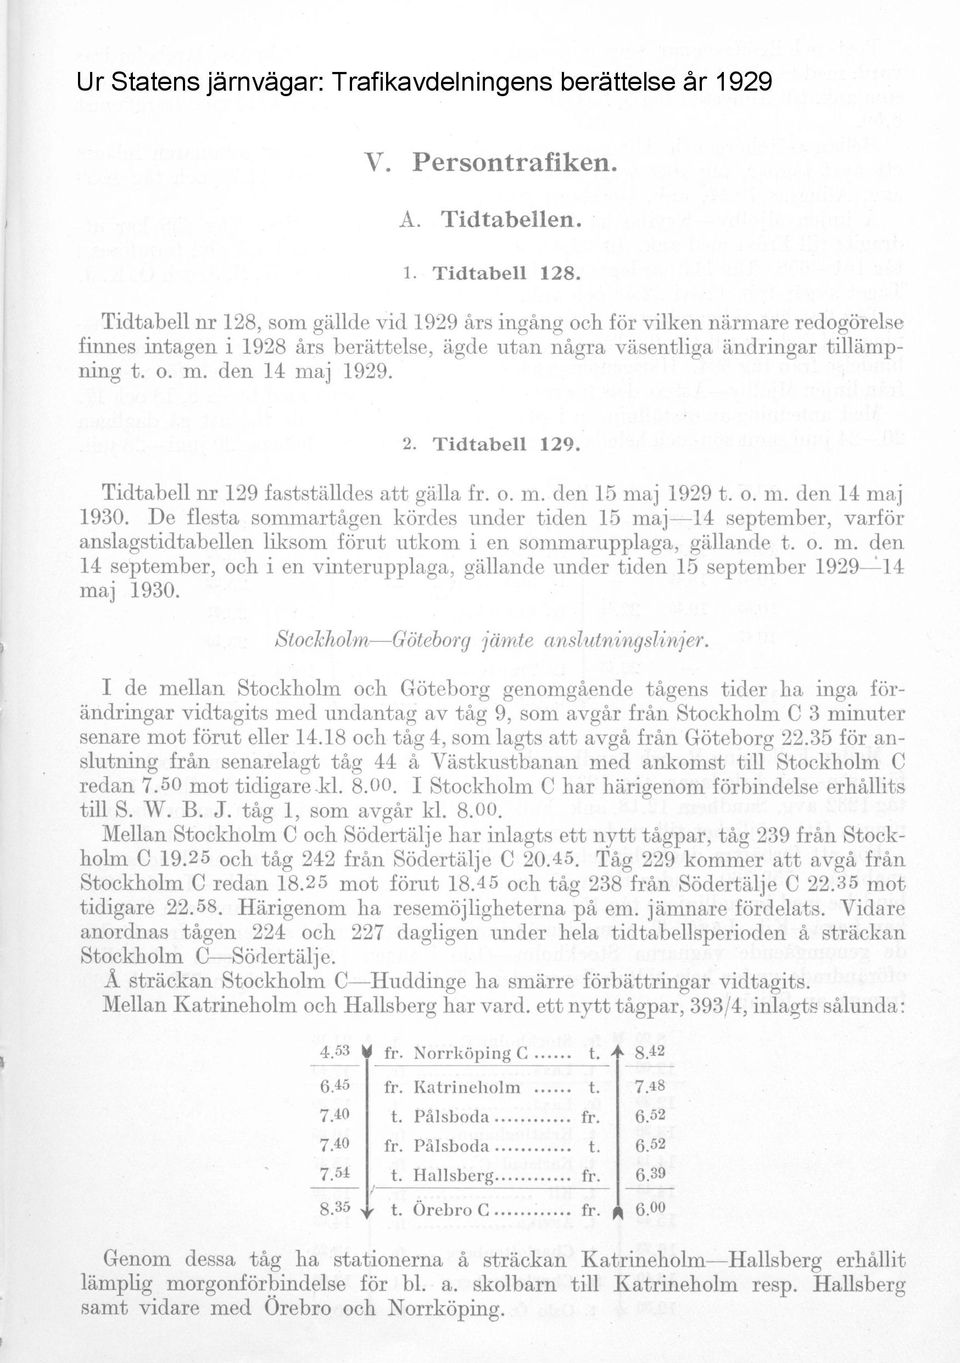 Tidtabell 129. Tidtabell nr 129 fastställdes att gälla fr. o. m. den 15 maj 1929 t. o. m. den 14 maj 1930.